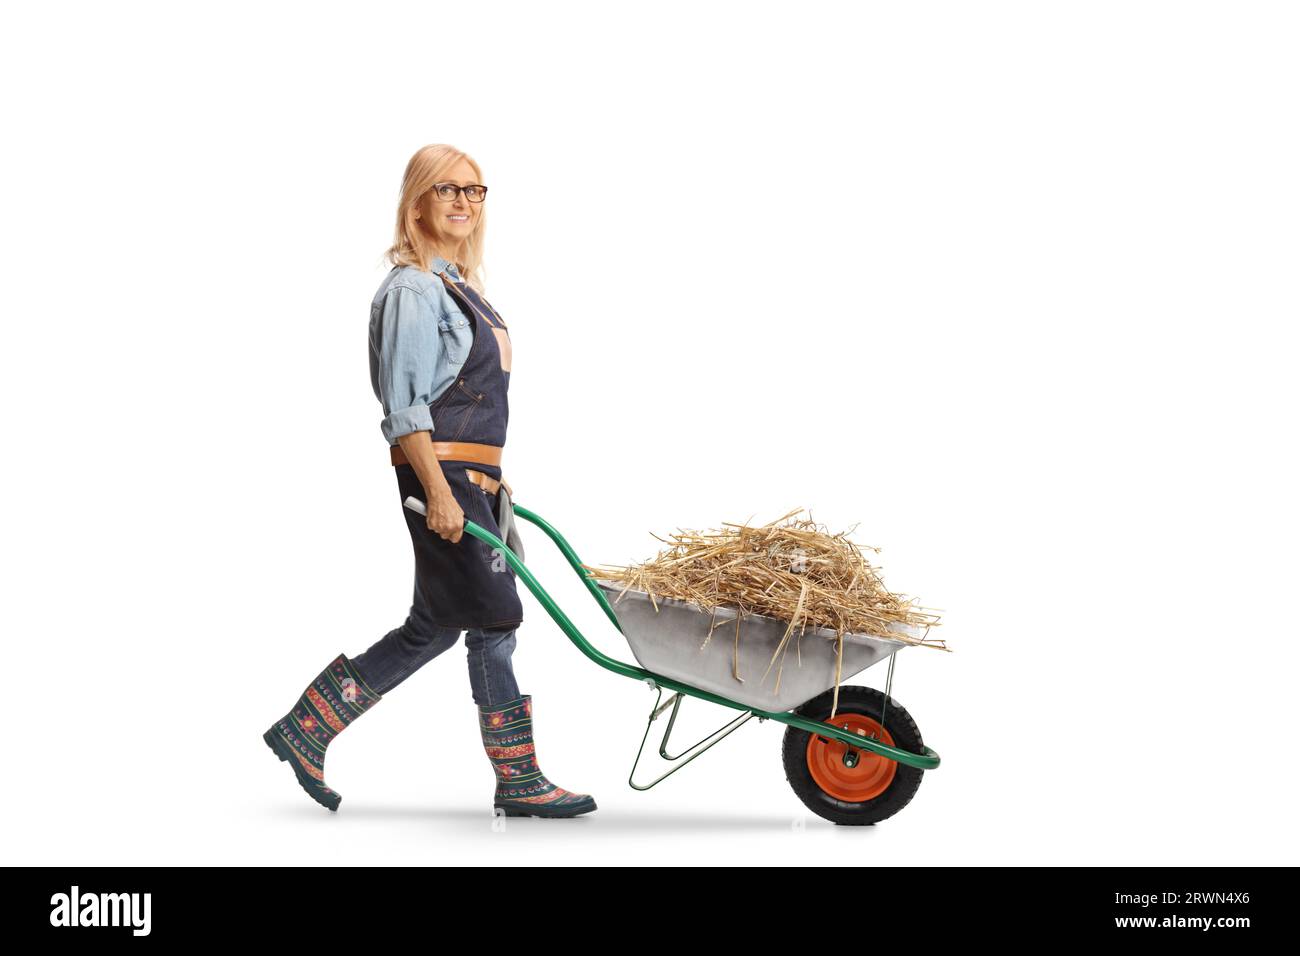 Foto a lunghezza intera di una donna contadina che cammina con il fieno in una carriola isolata su sfondo bianco Foto Stock